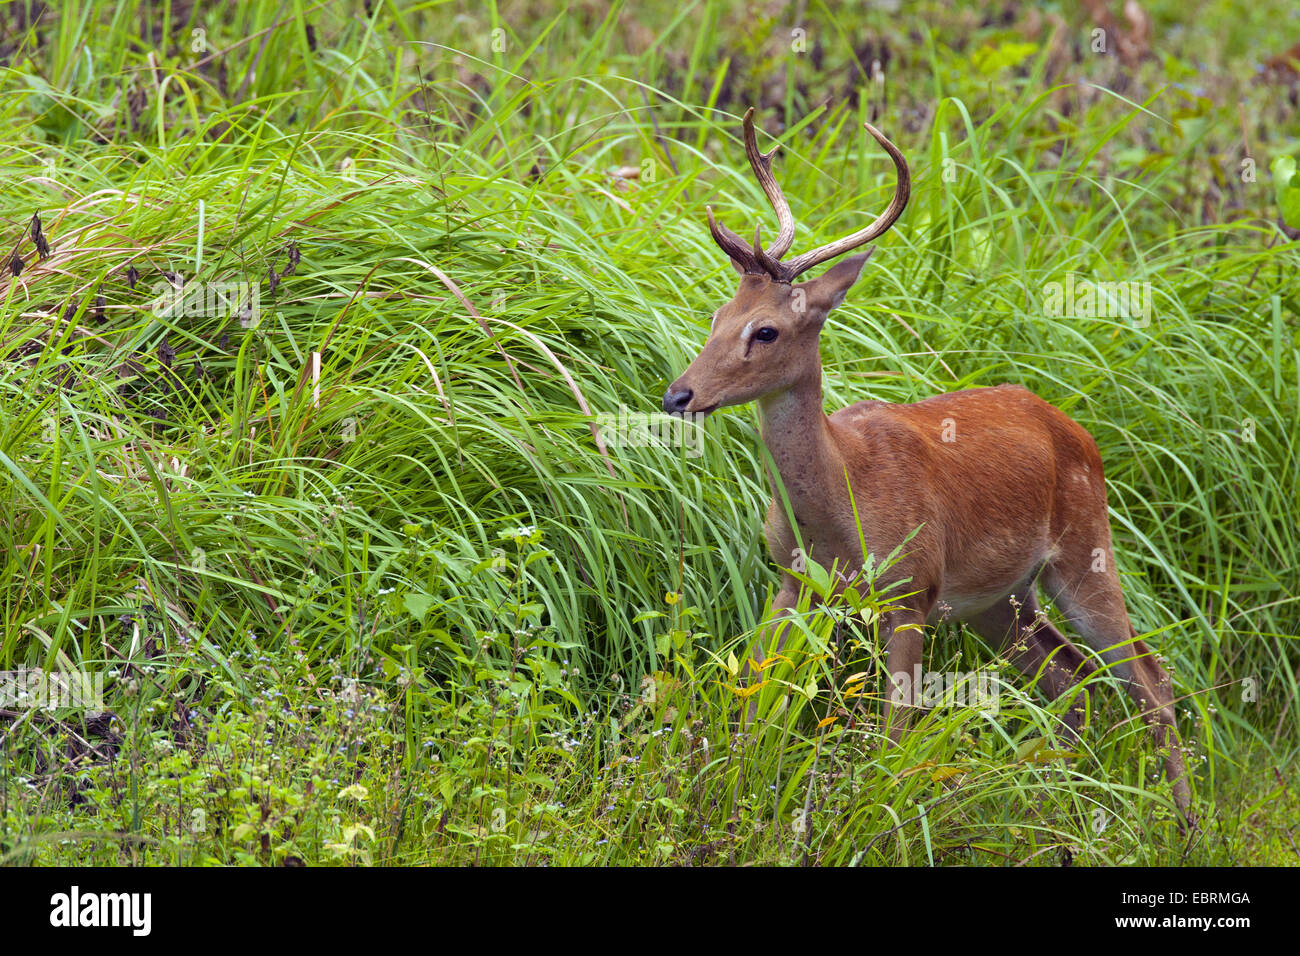 Thamin, Brow-antlered deer, Eld's deer (Panolia eldii, Rucervus eldii, Cervus eldii), standing on grass, Thailand, Huai Kha Khaeng Wildlife Sanctua Stock Photo